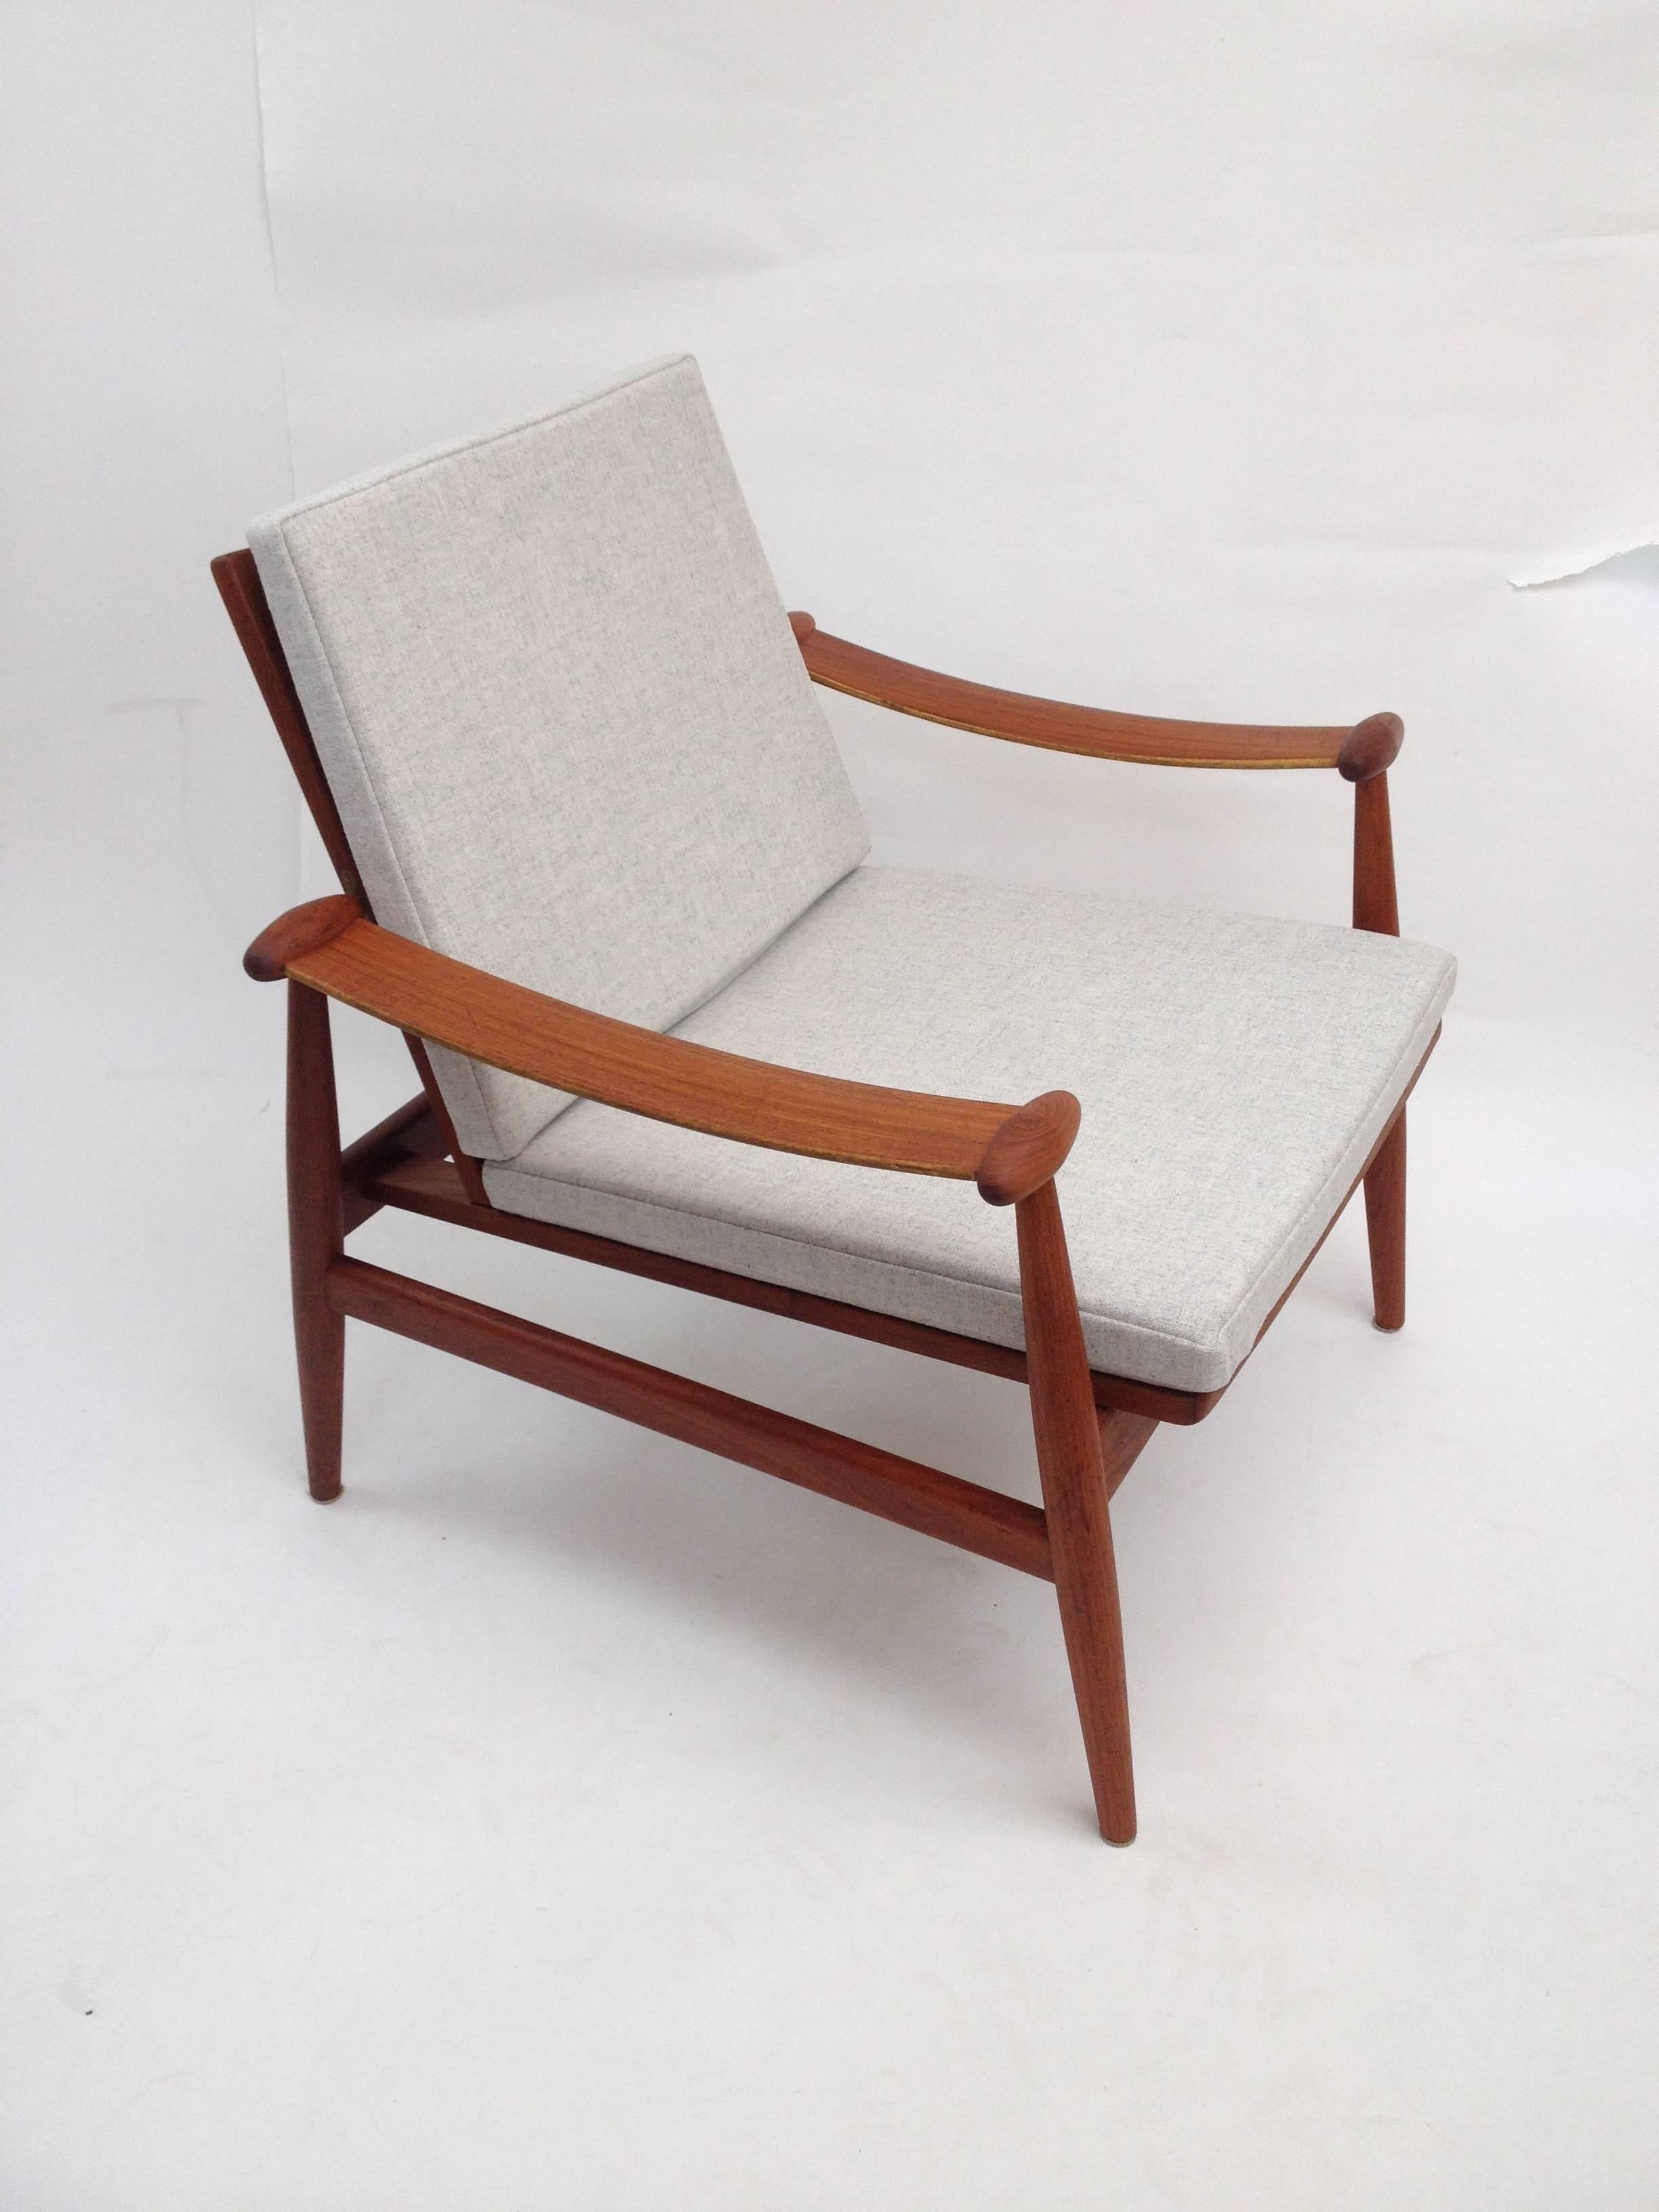 Mid-20th Century 1950s Danish Teak Easy Chair Designed by Finn Juhl for France & Daverkosen For Sale